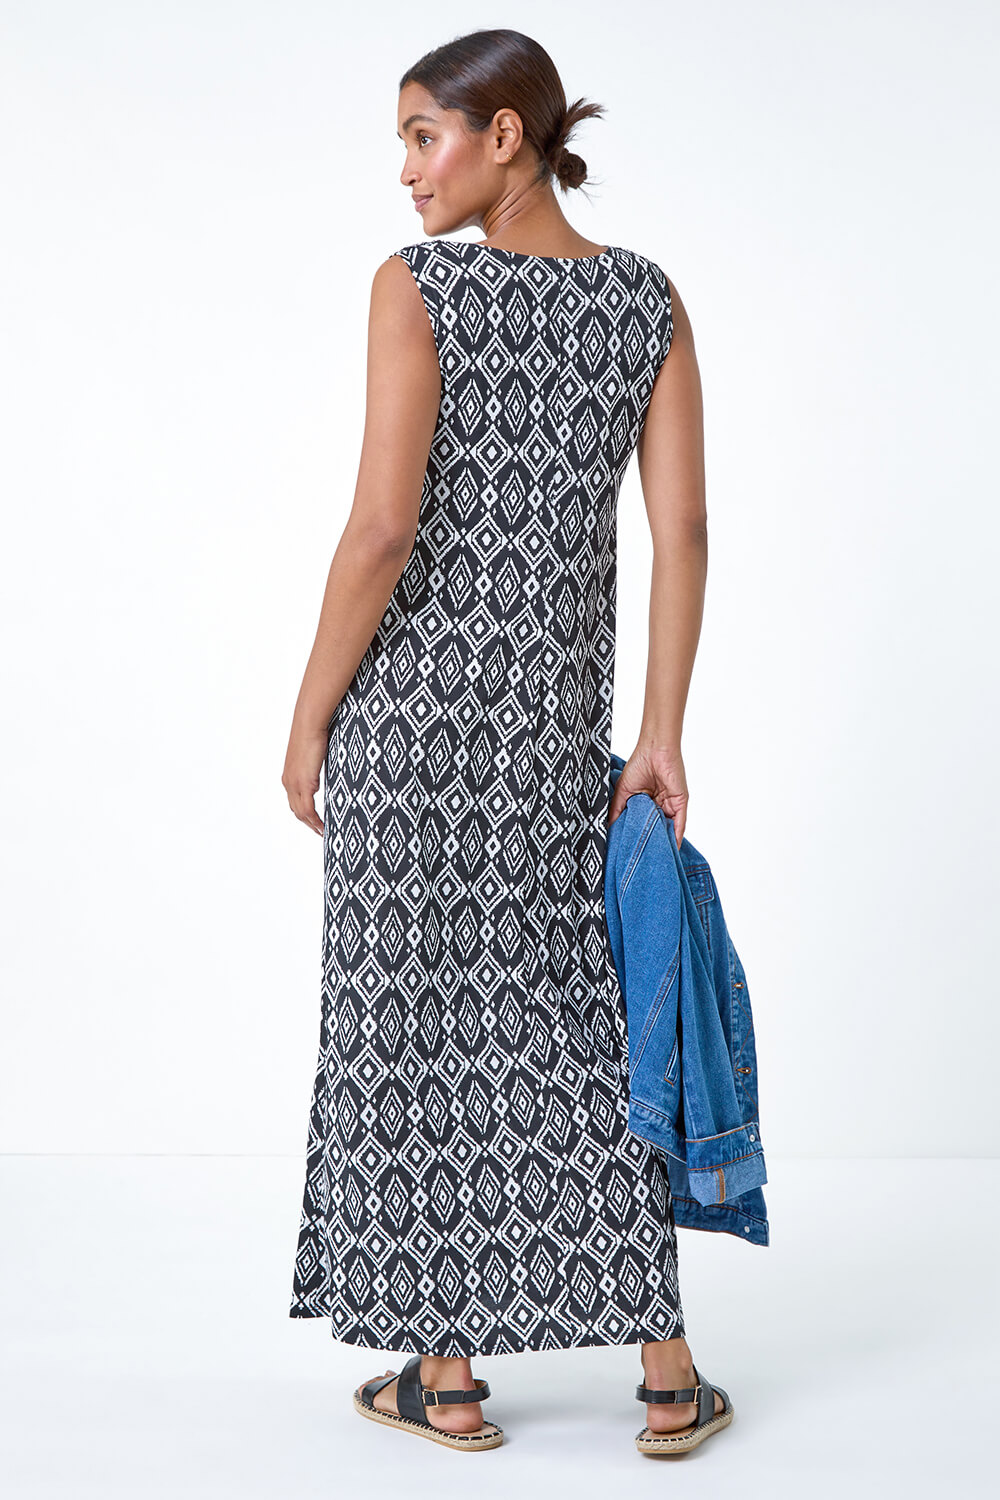 Black Aztec Puff Print Twist Stretch Maxi Dress, Image 3 of 5